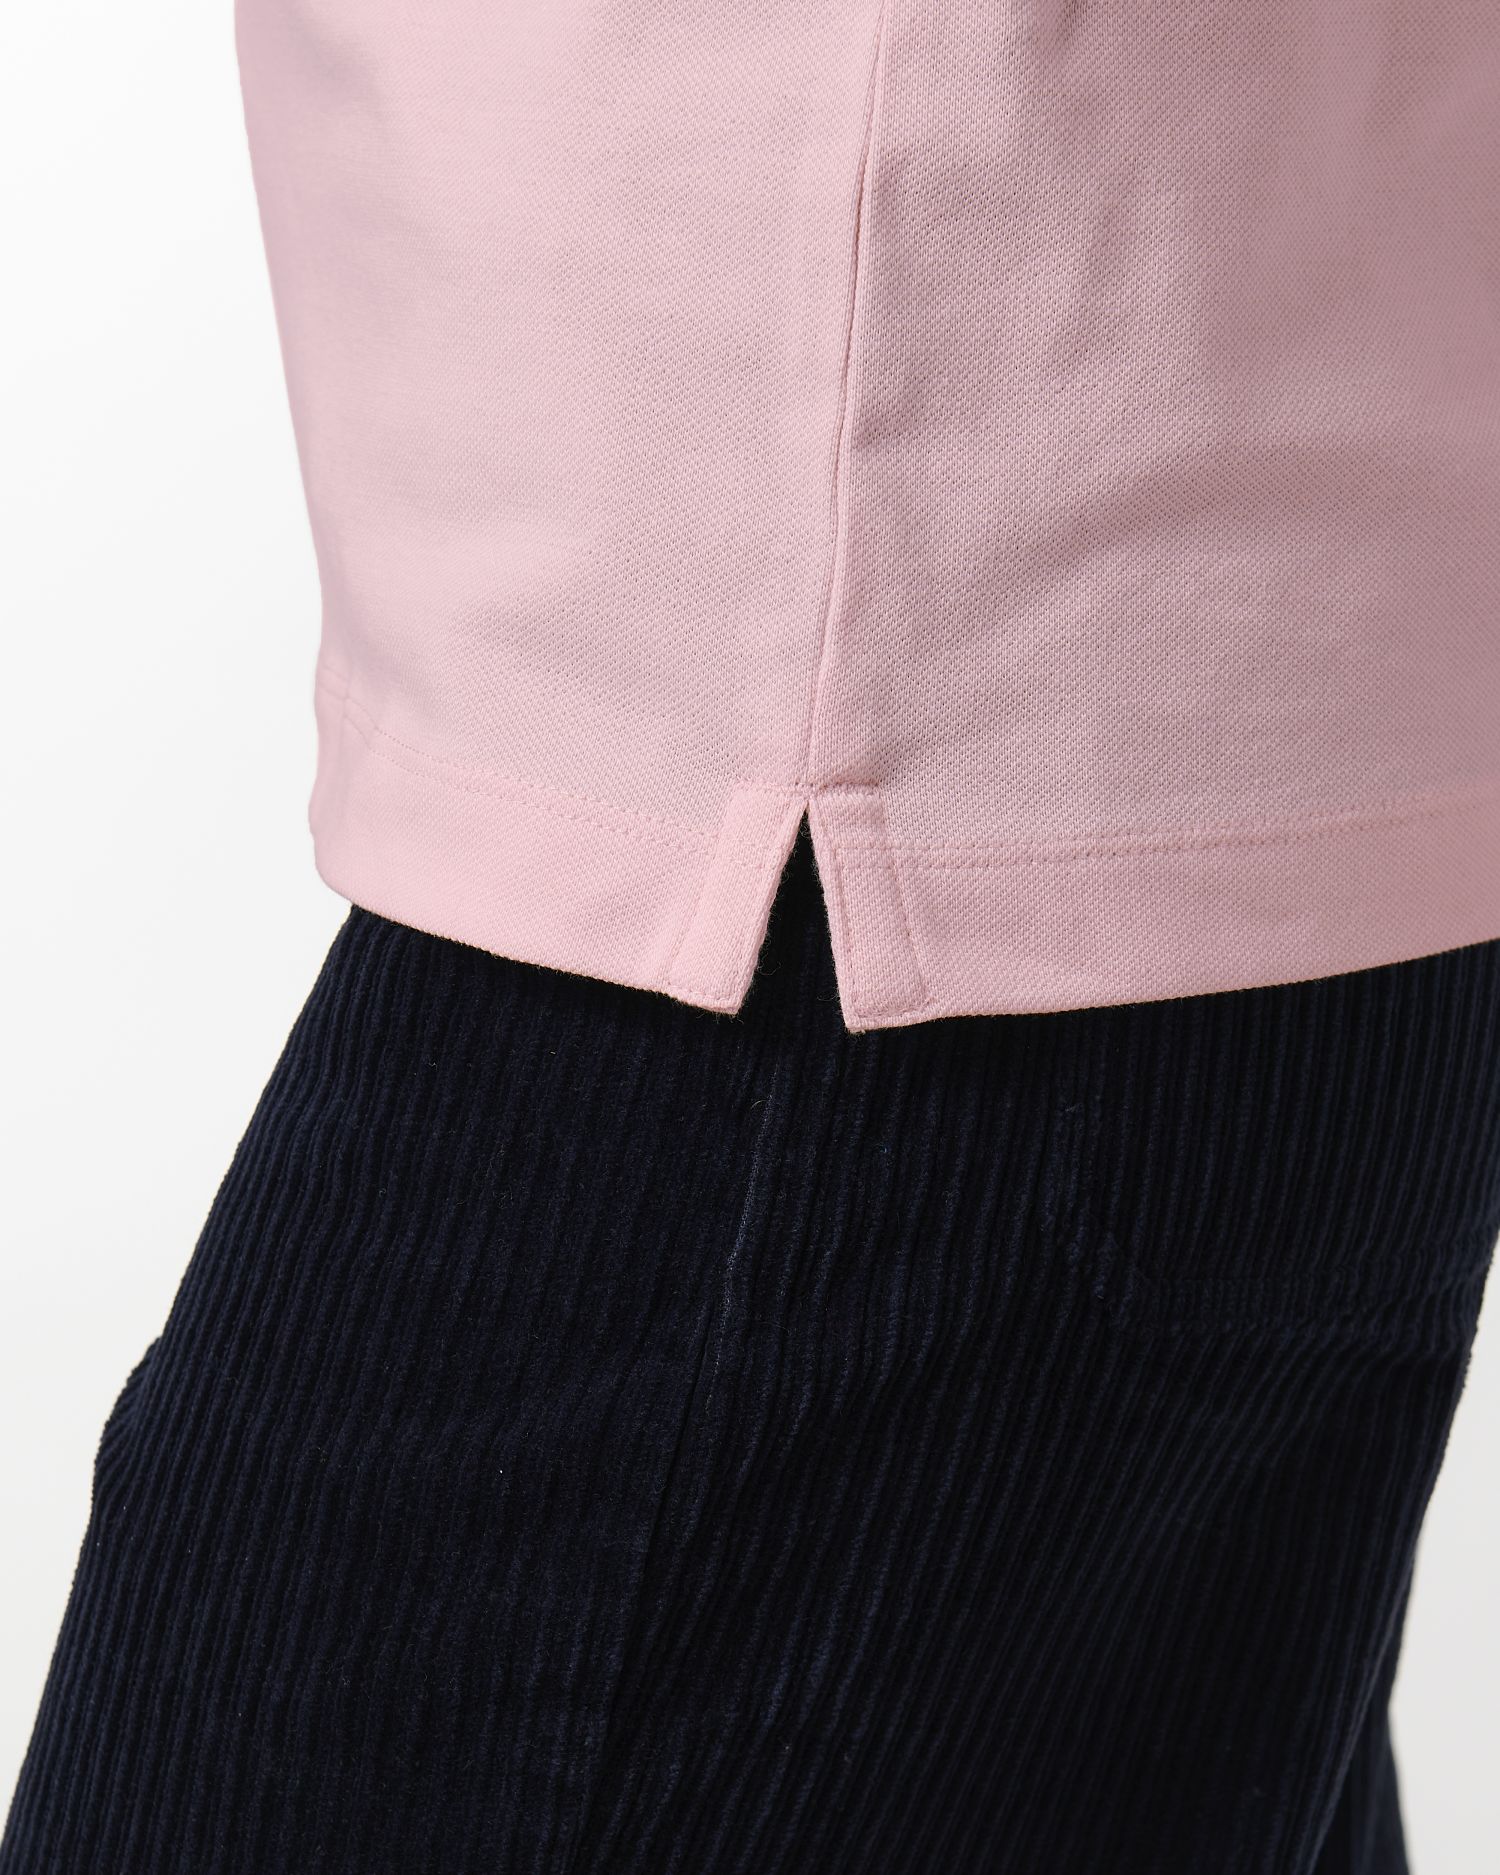  Stella Elliser in Farbe Cotton Pink